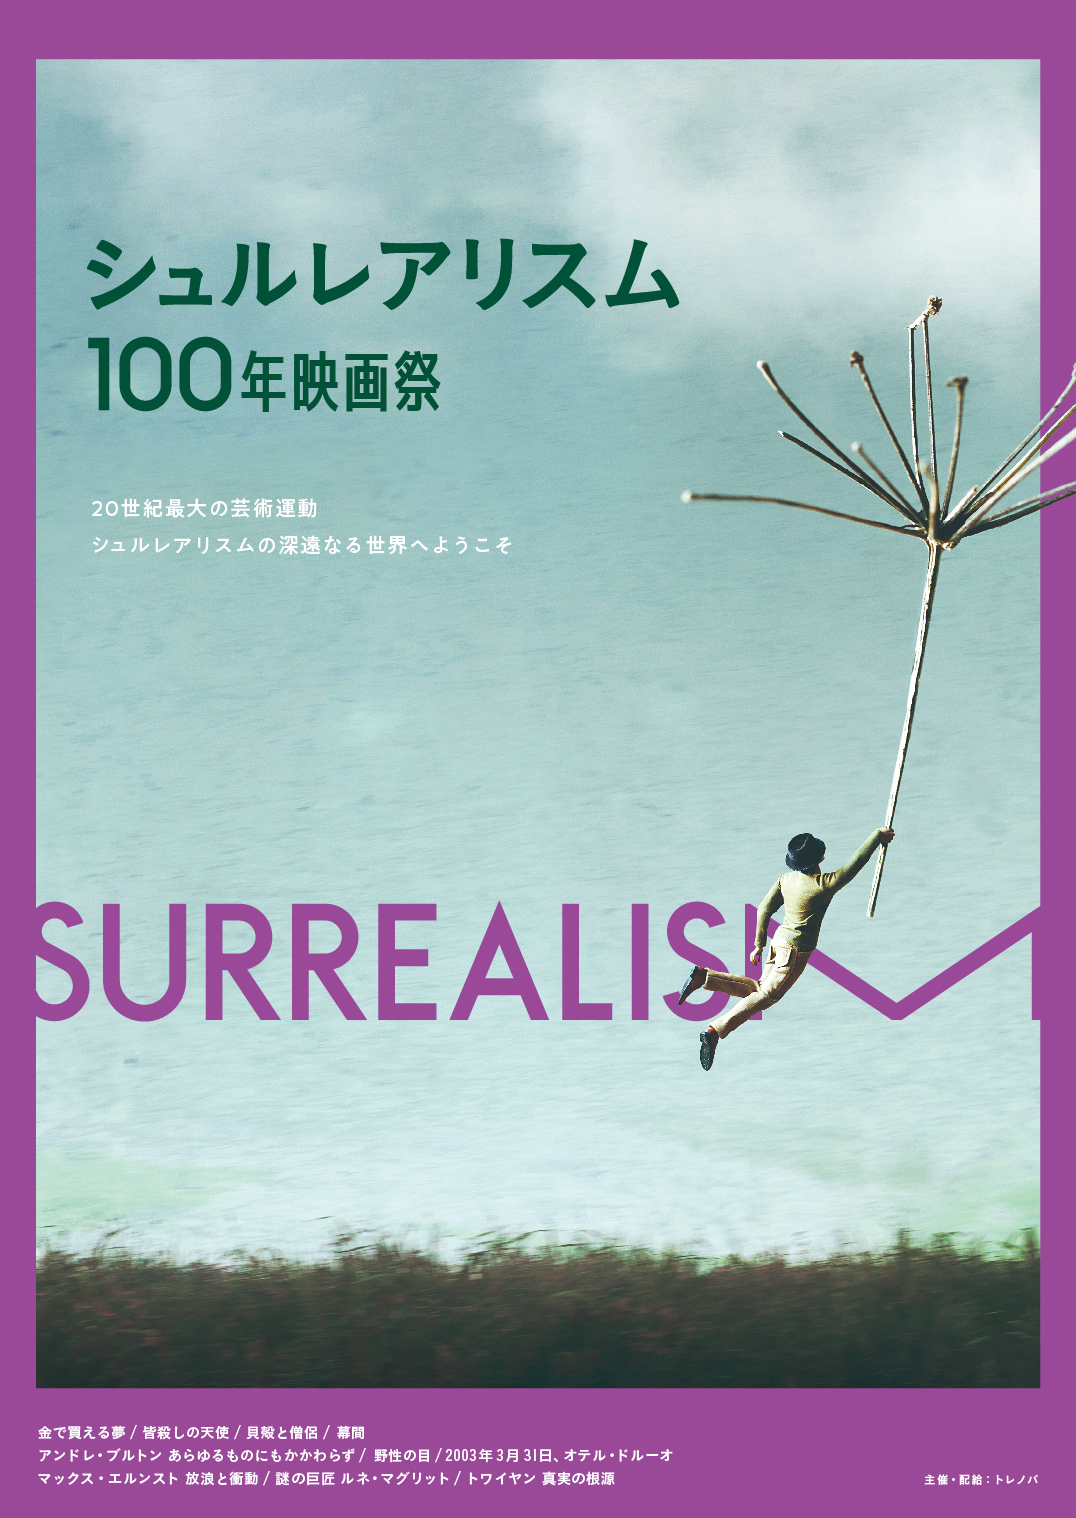 「シュルレアリスム100年映画祭」10月5日から開催 日本初公開作など10作品を上映